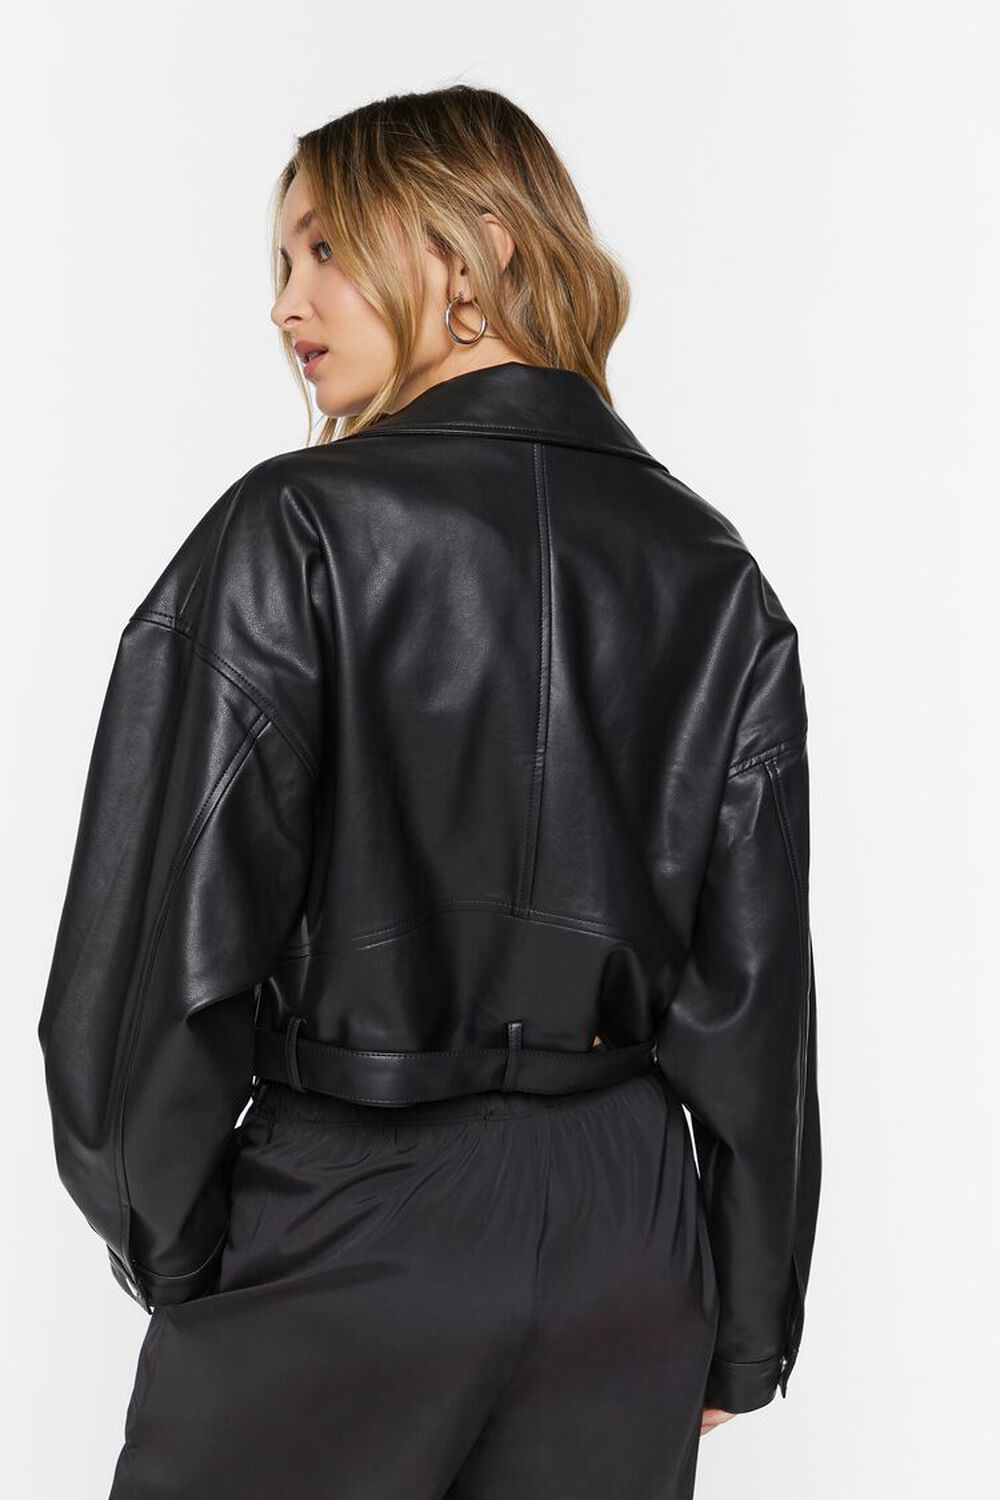 BLACK Faux Leather Cropped Moto Jacket, image 3